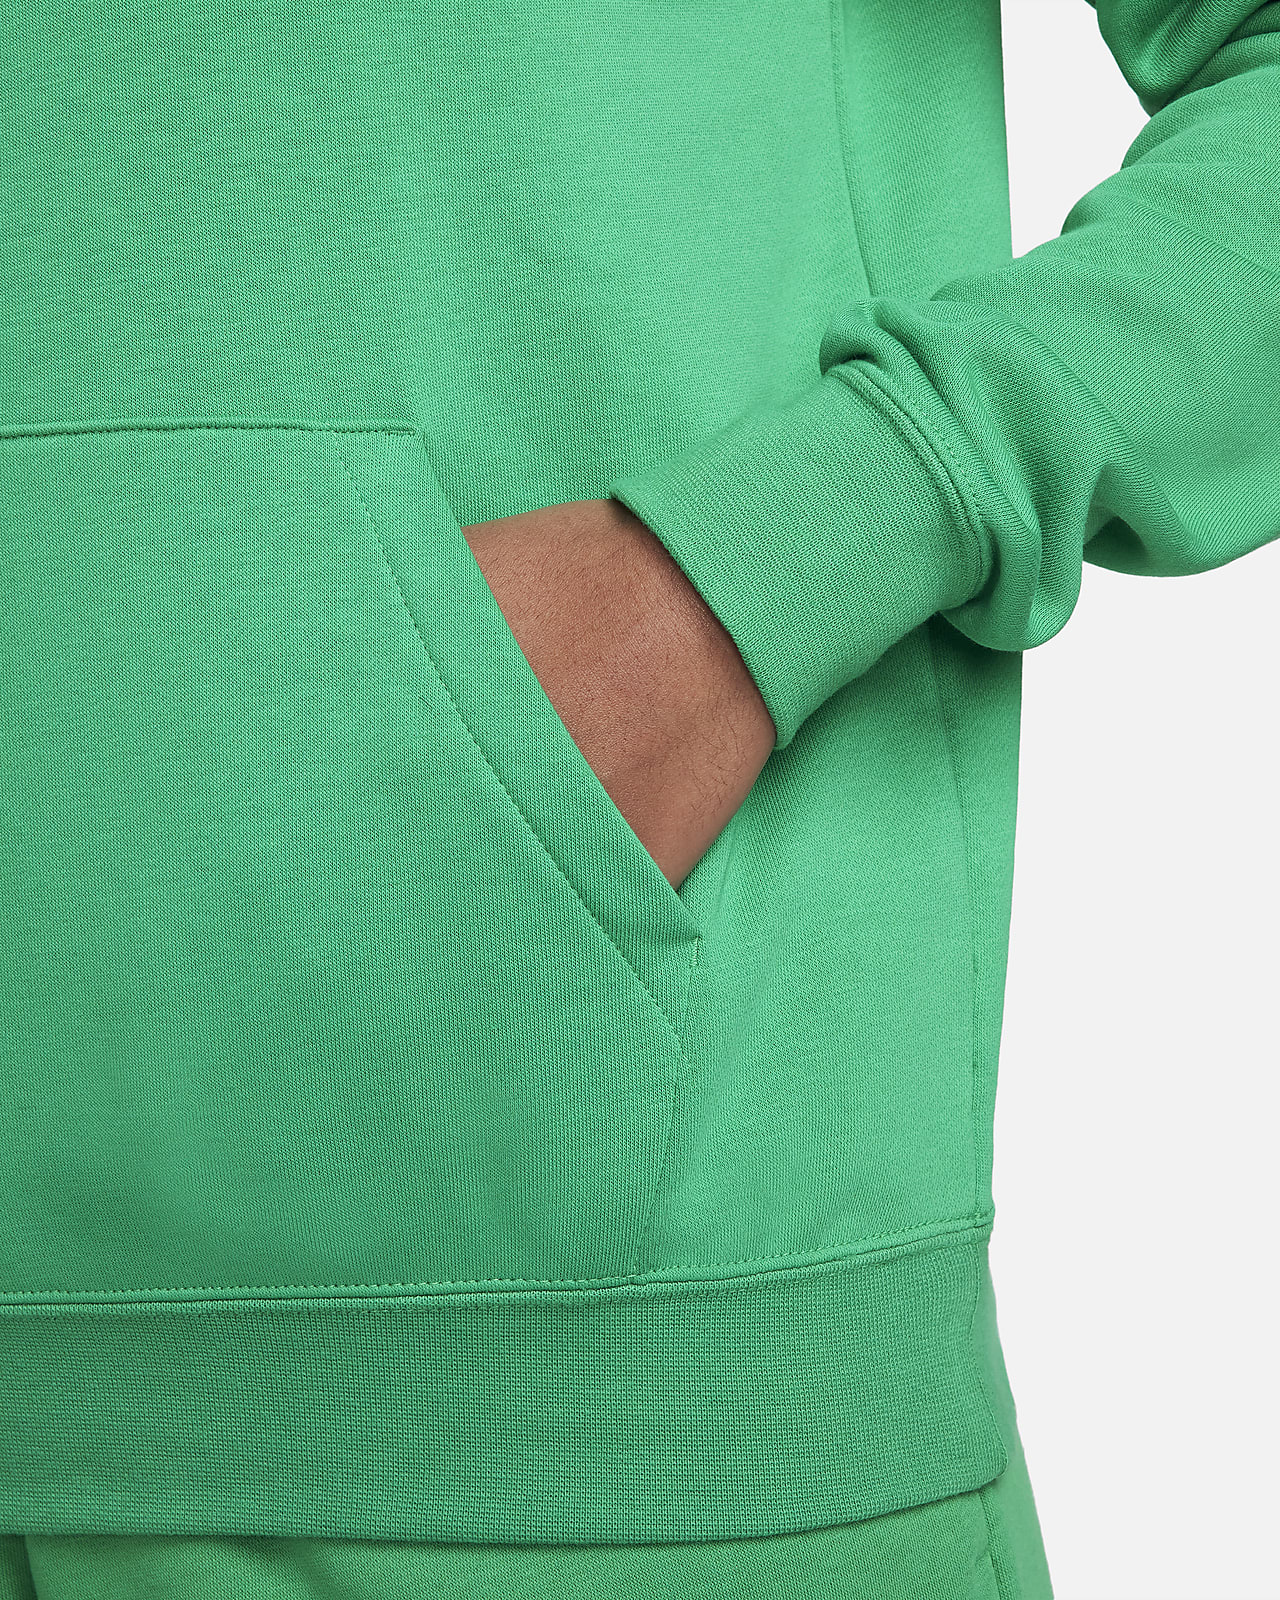 Nike Sportswear Club Fleece Women's 1/2-Zip Sweatshirt (Plus Size)